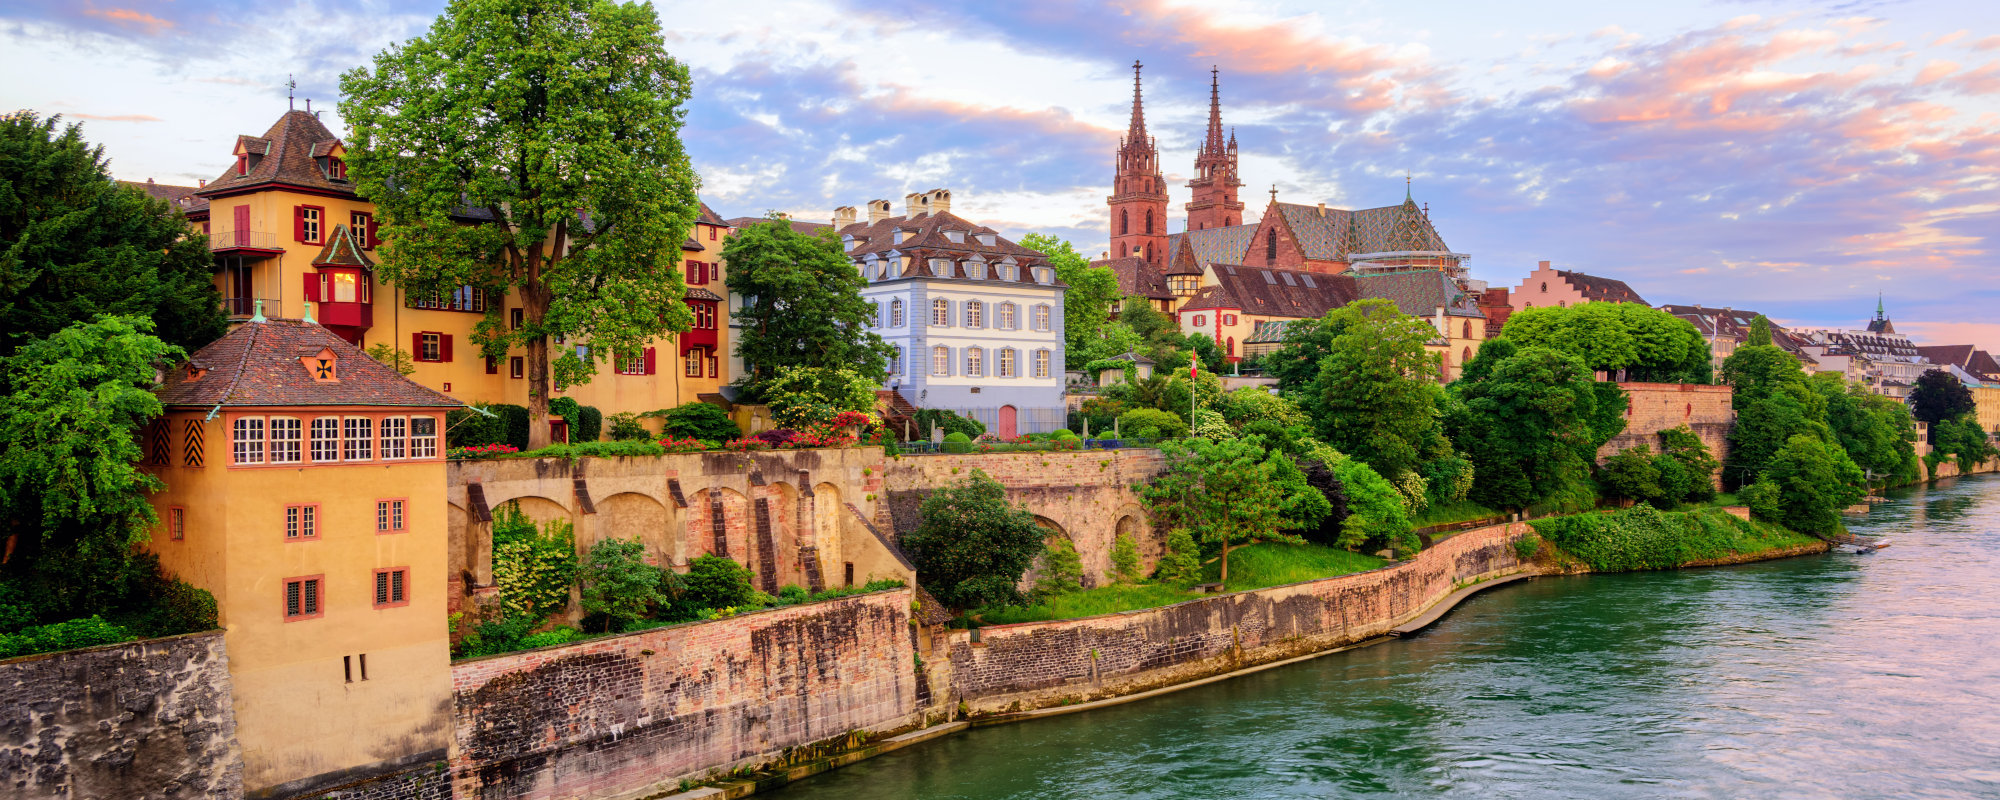 Schweiz - Rhein - Basel - Blick auf Stadt